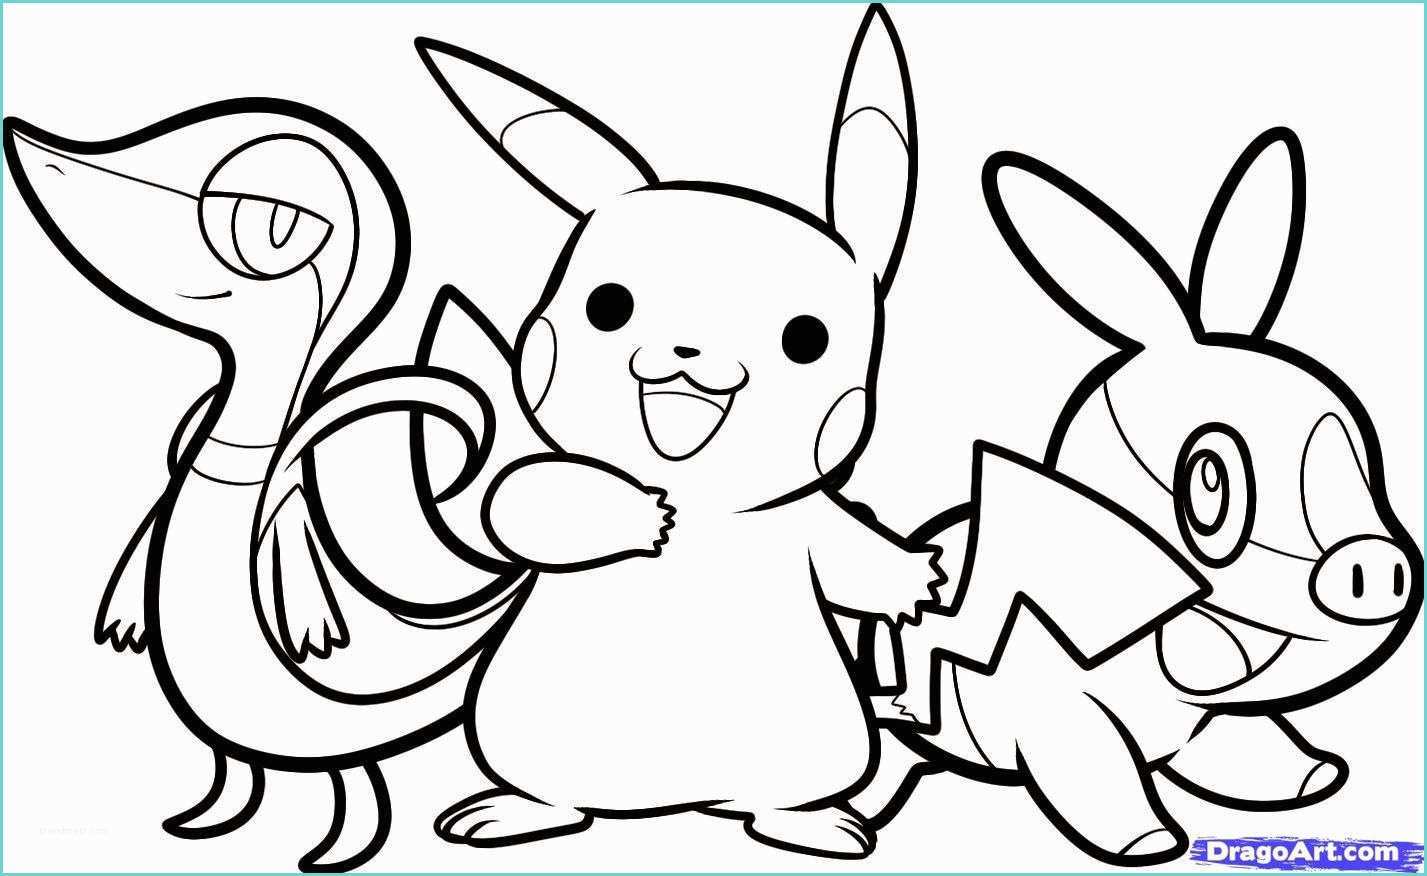 Dessin Pochoir A Imprimer Gratuit Coloriage Pokemon à Imprimer Gratuit